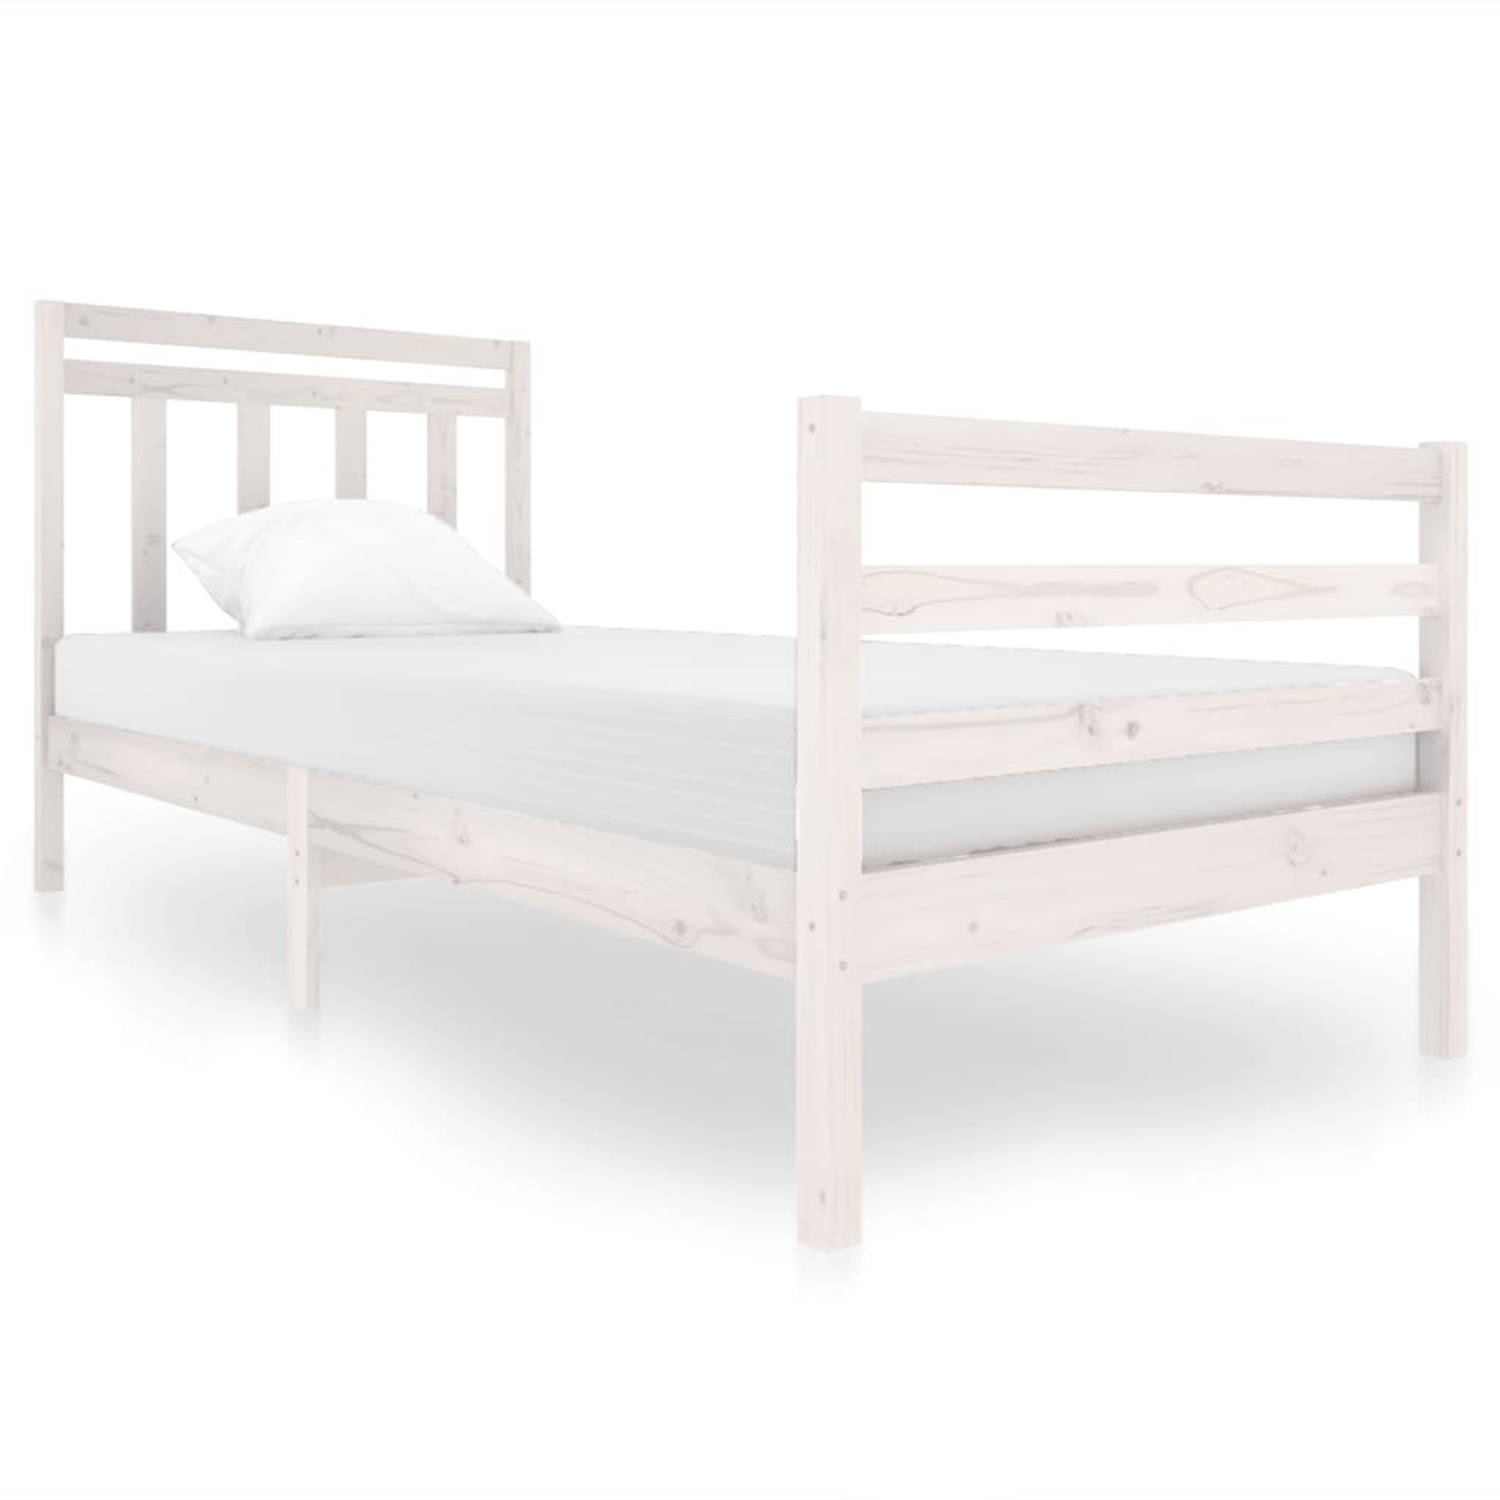 The Living Store Bedframe massief hout wit 90x200 cm - Bedframe - Bedframes - Eenpersoonsbed - Bed - Bedombouw - Frame - Bed Frame - Ledikant - Bedframe Met Hoofdeinde - Eenpersoon